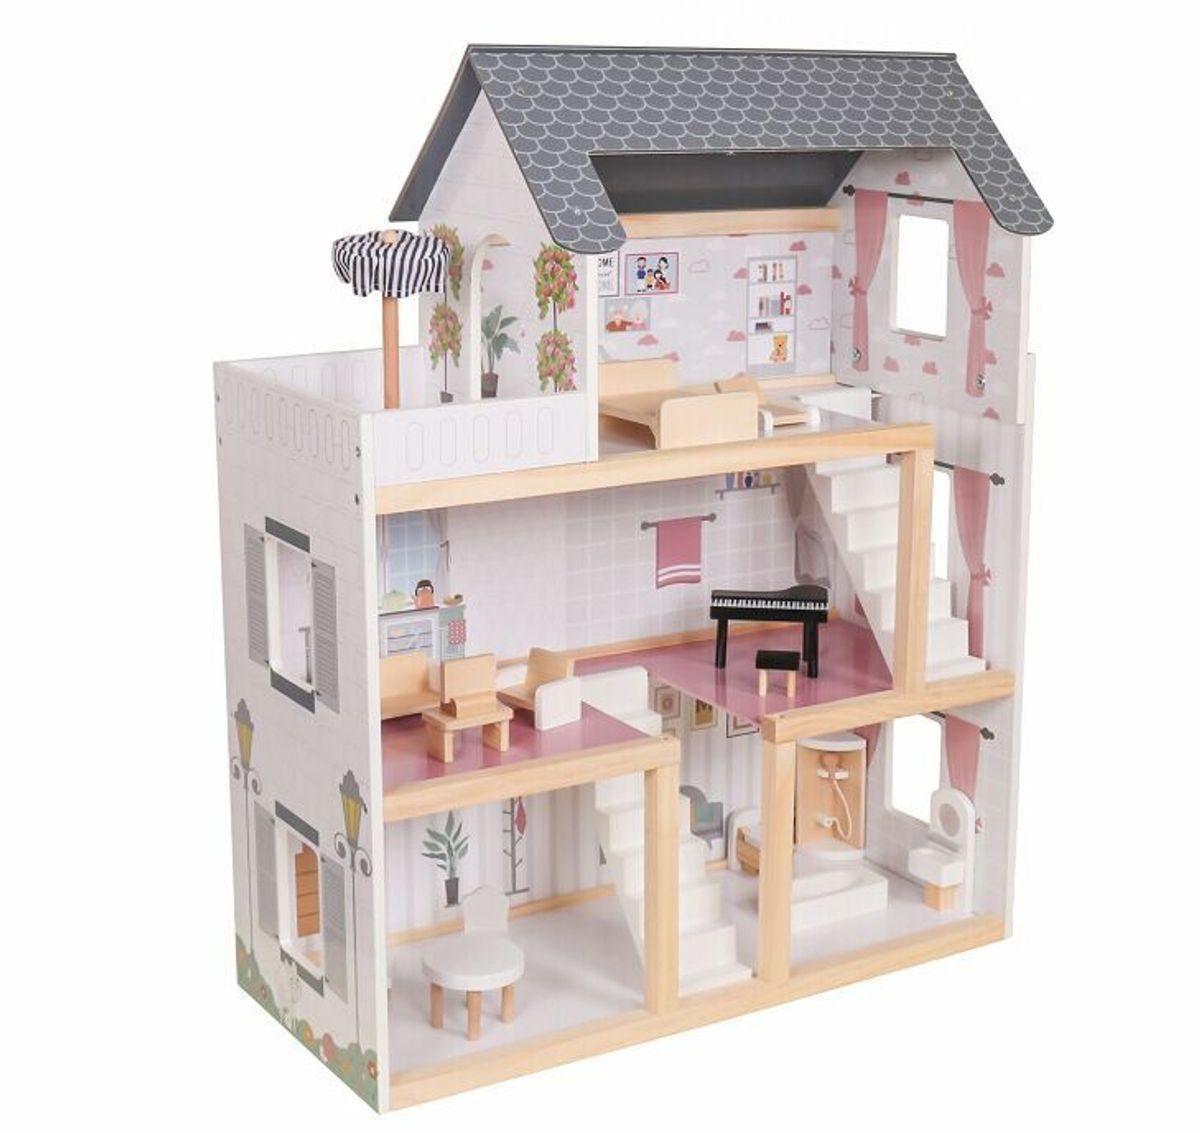 Coemo Puppenhaus, (möbliertes Puppenhaus Holz, 17-tlg), komplett eingerichtet, Möbeln aus Holz, Puppenhaus Puppenstube Zubehör